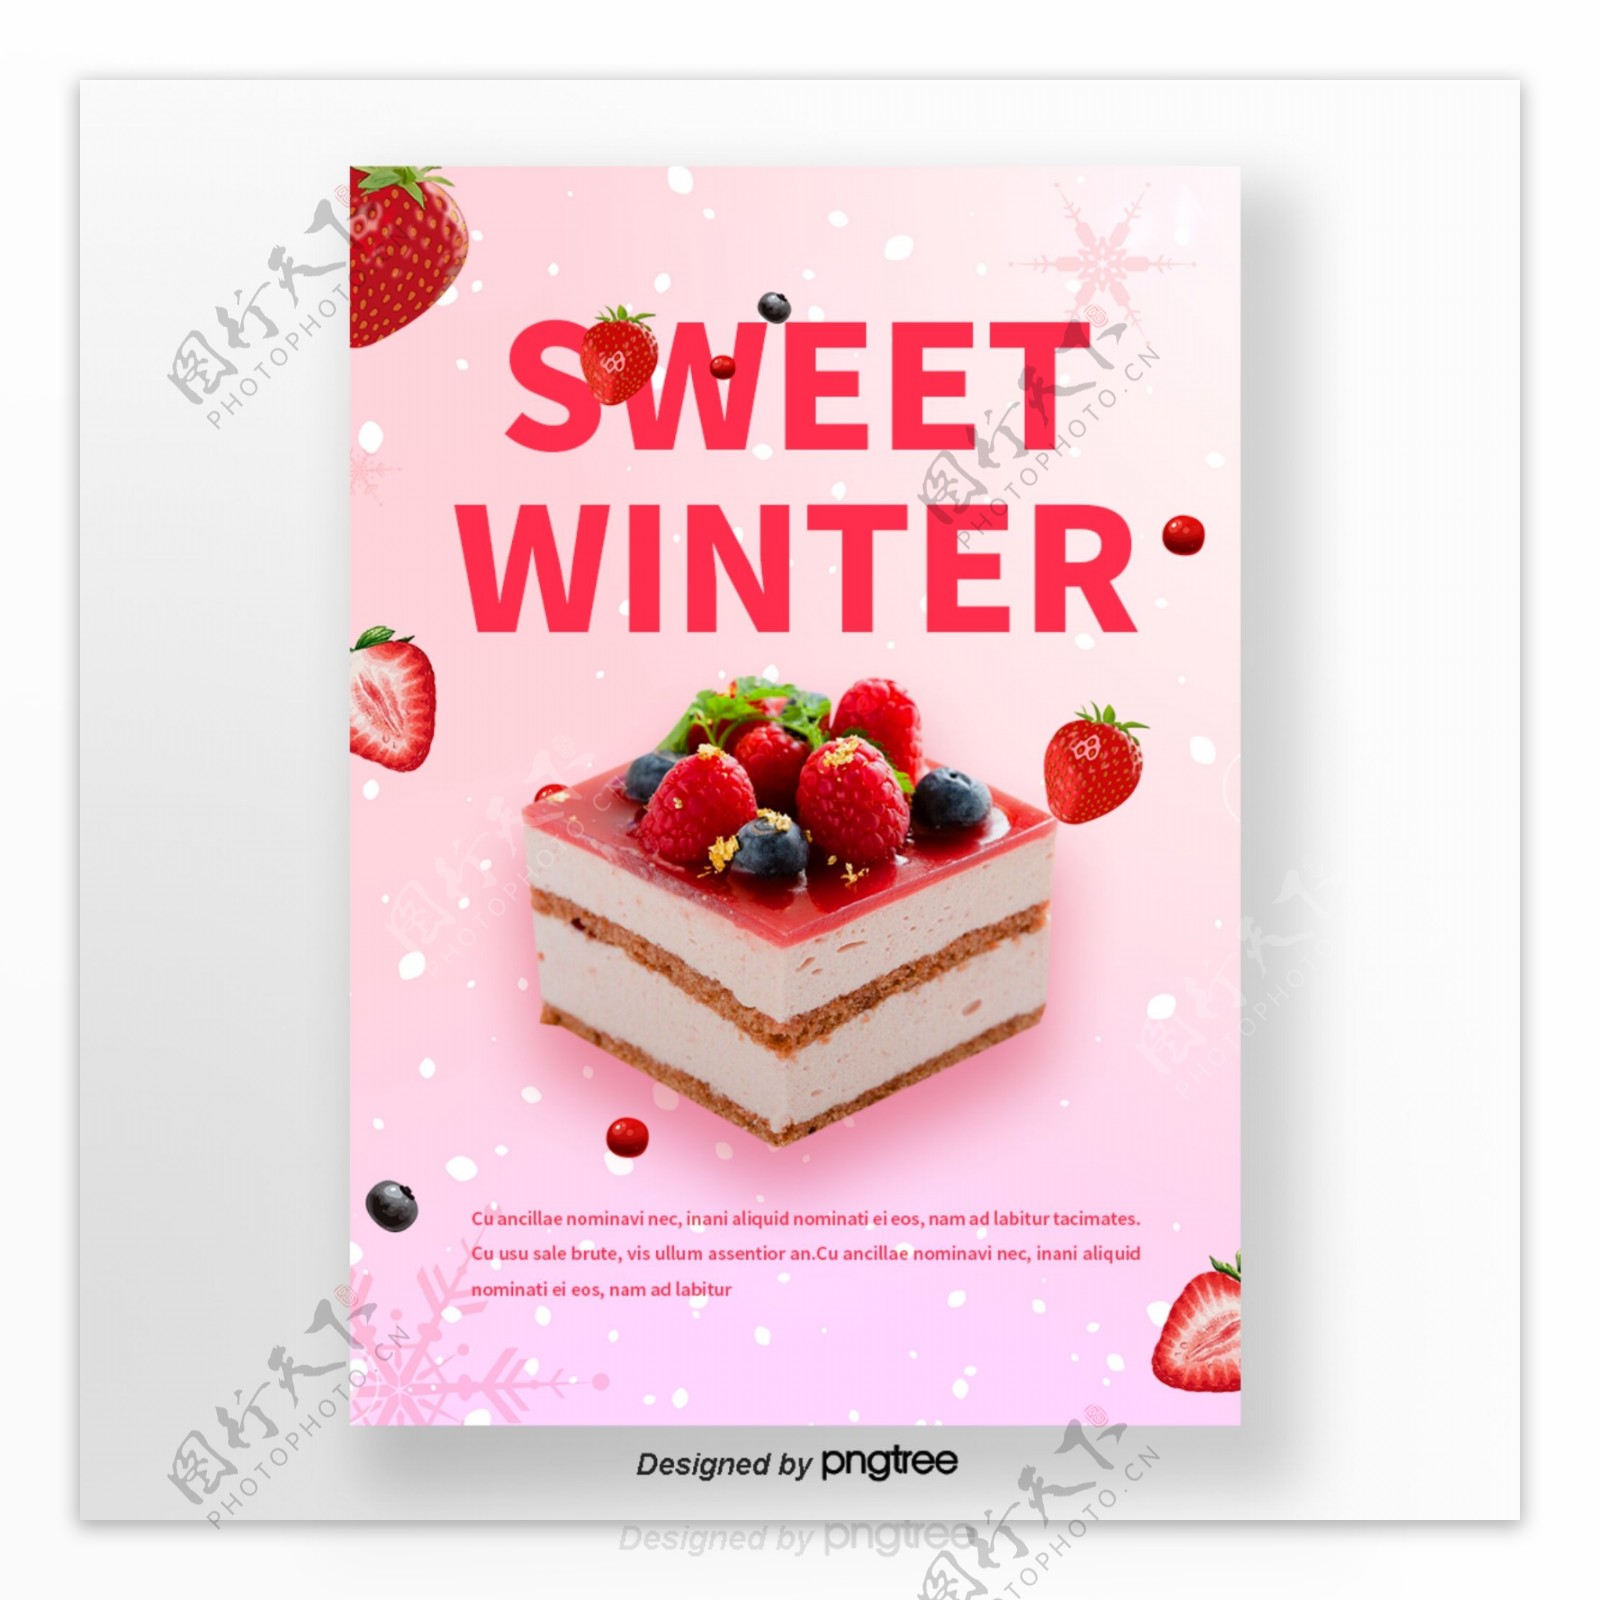 粉色雪花草莓蓝莓蛋糕咖啡冬季甜味食品海报